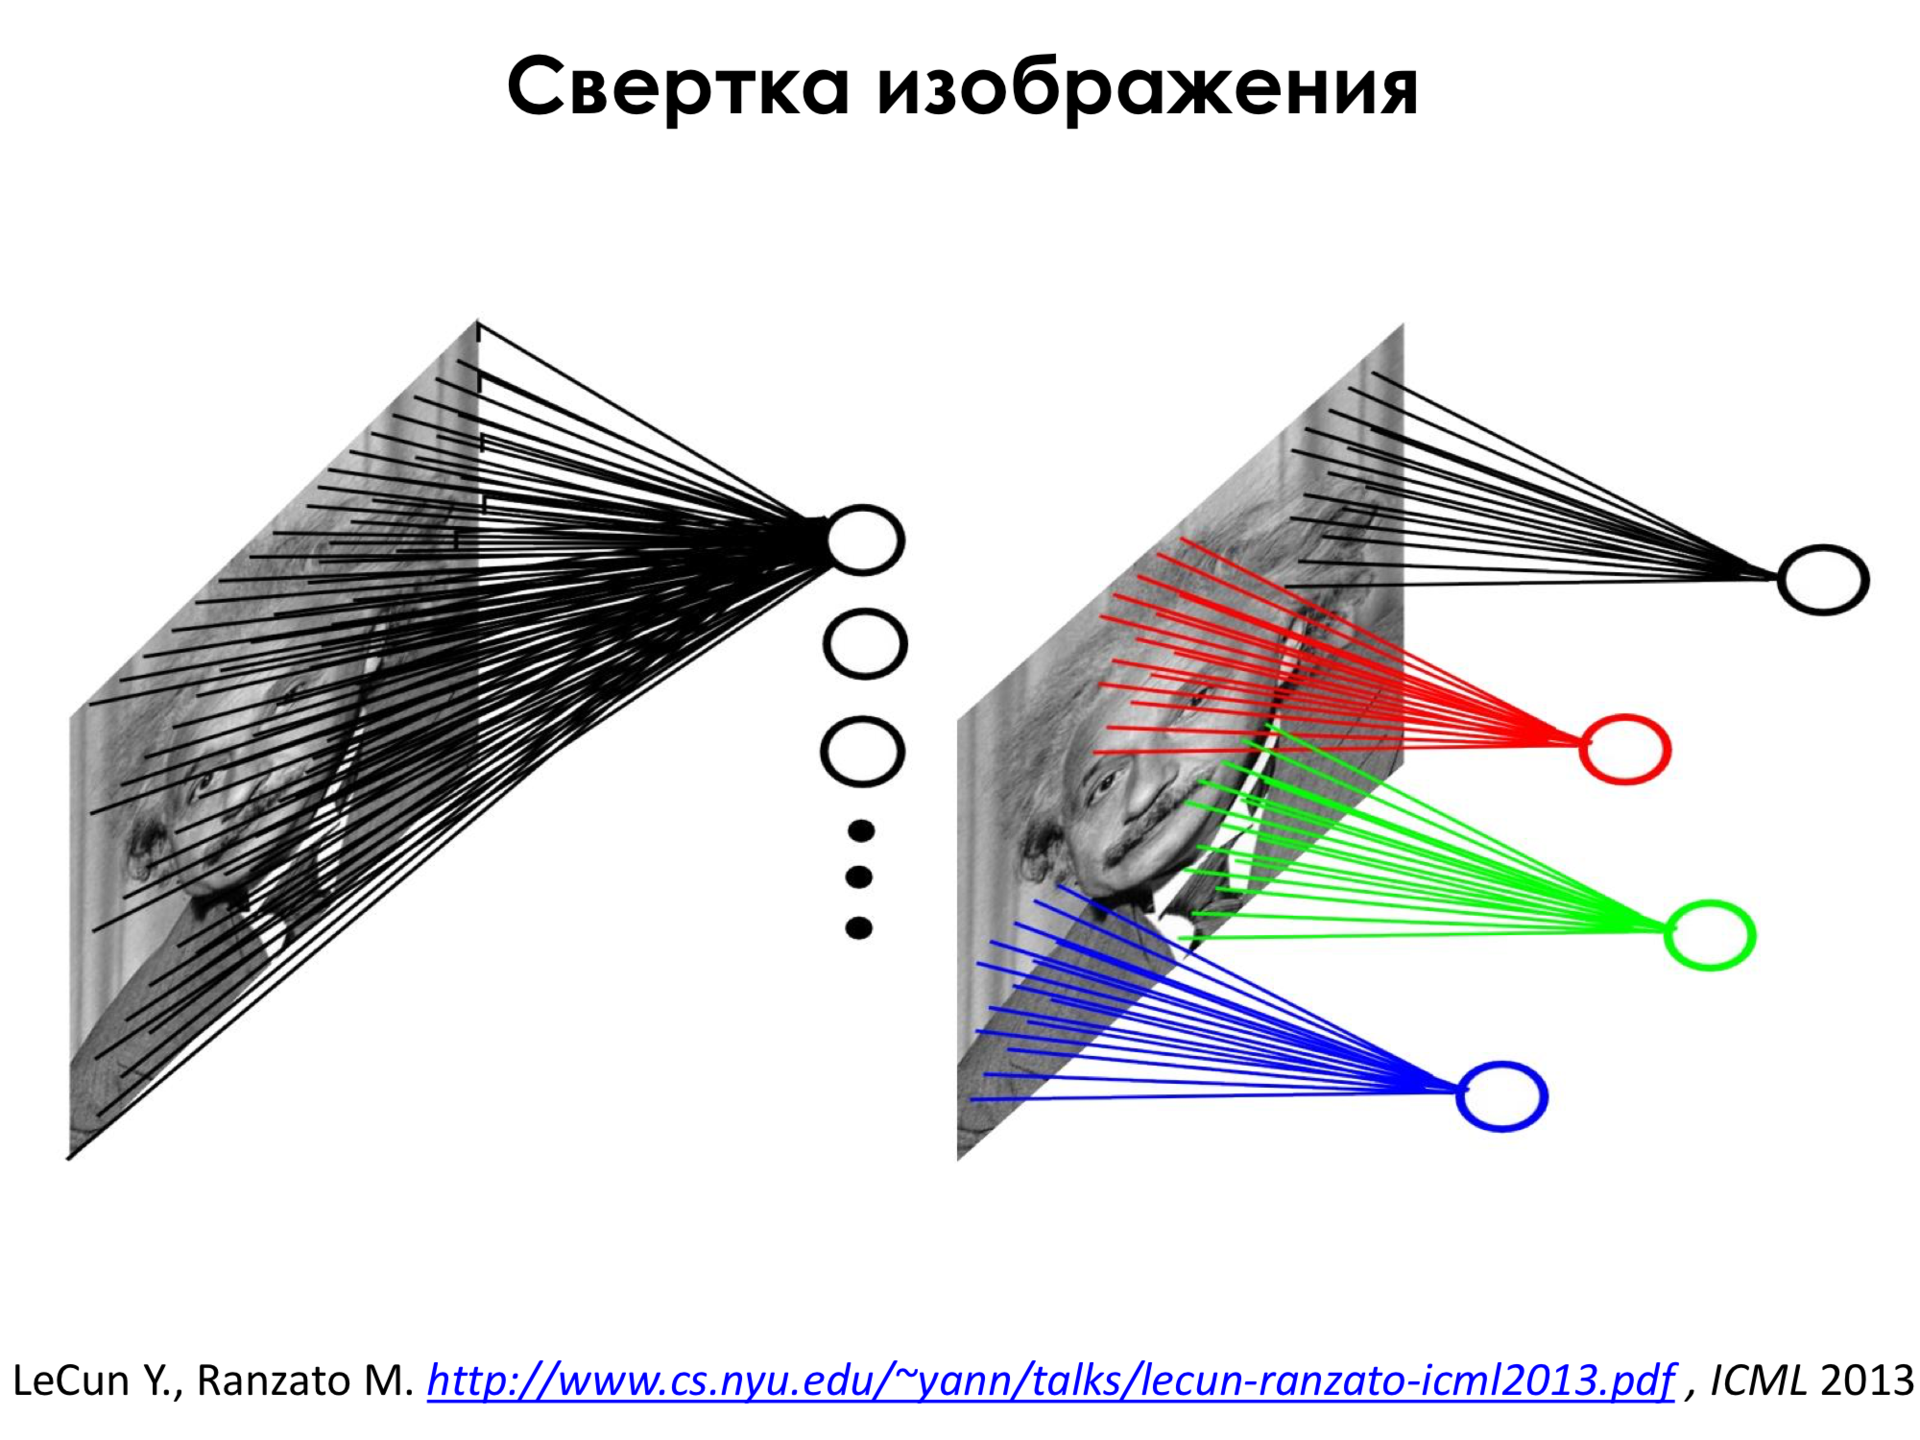 Самое главное о нейронных сетях. Лекция в Яндексе - 15